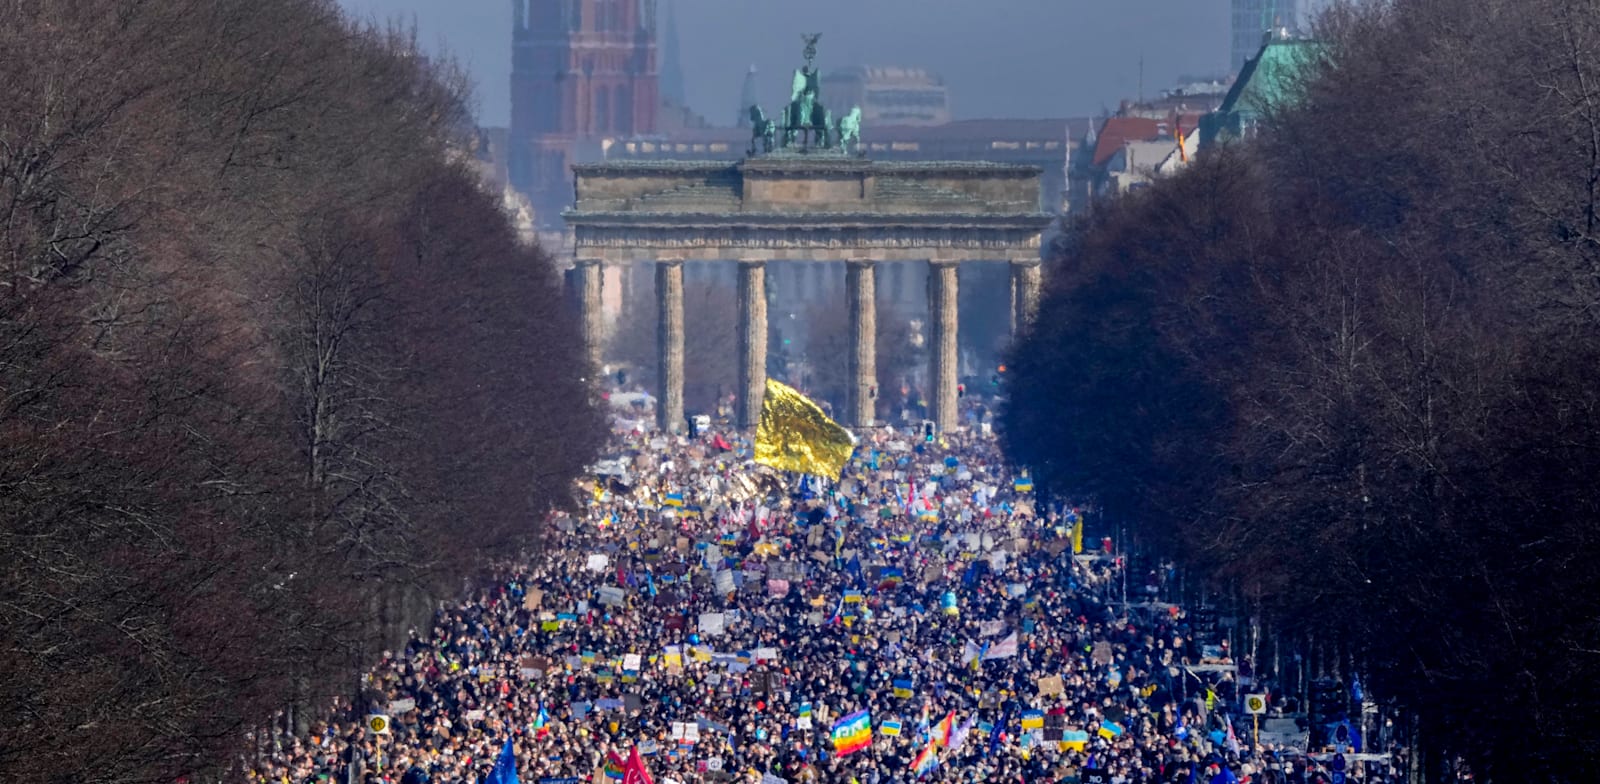 הפגנה בברלין נגד הפלישה הרוסית לאוקראינה. להסברה הרוסית אין סיכוי להתמודד עם הנרטיב האוקראיני / צילום: Associated Press, FABRIZIO BENSCH